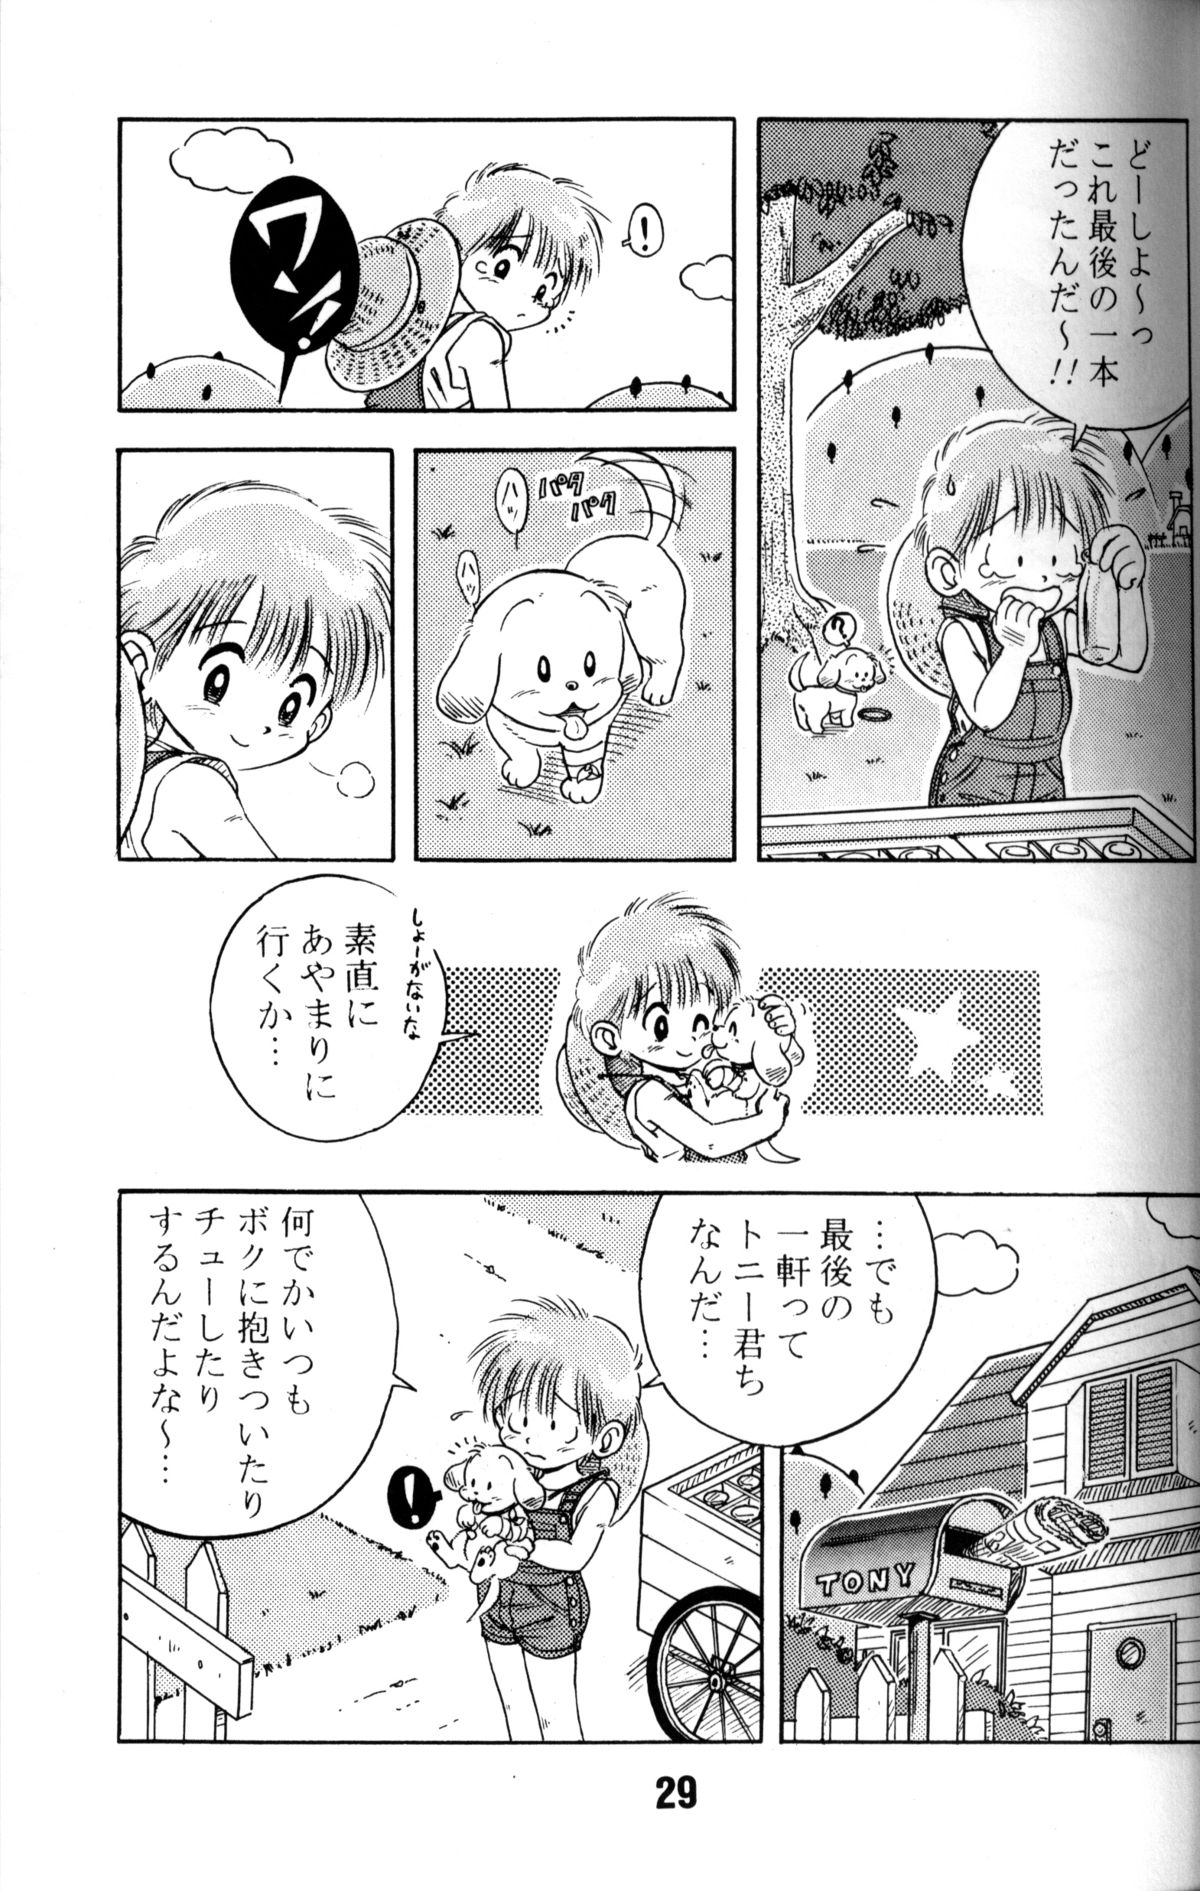 Anthology - Nekketsu Project - Volume 1 'Shounen Banana Milk' page 28 full